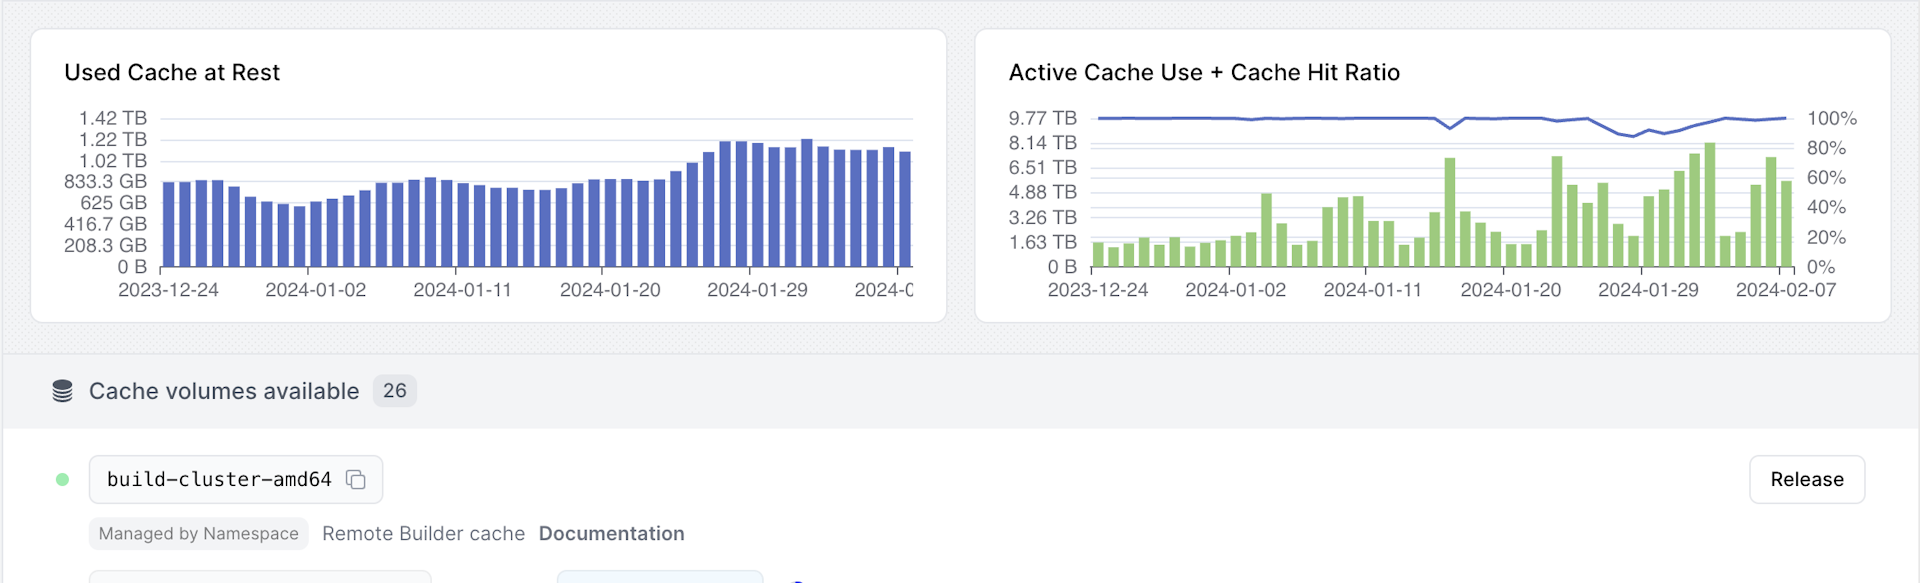 aggregate-cache-usage